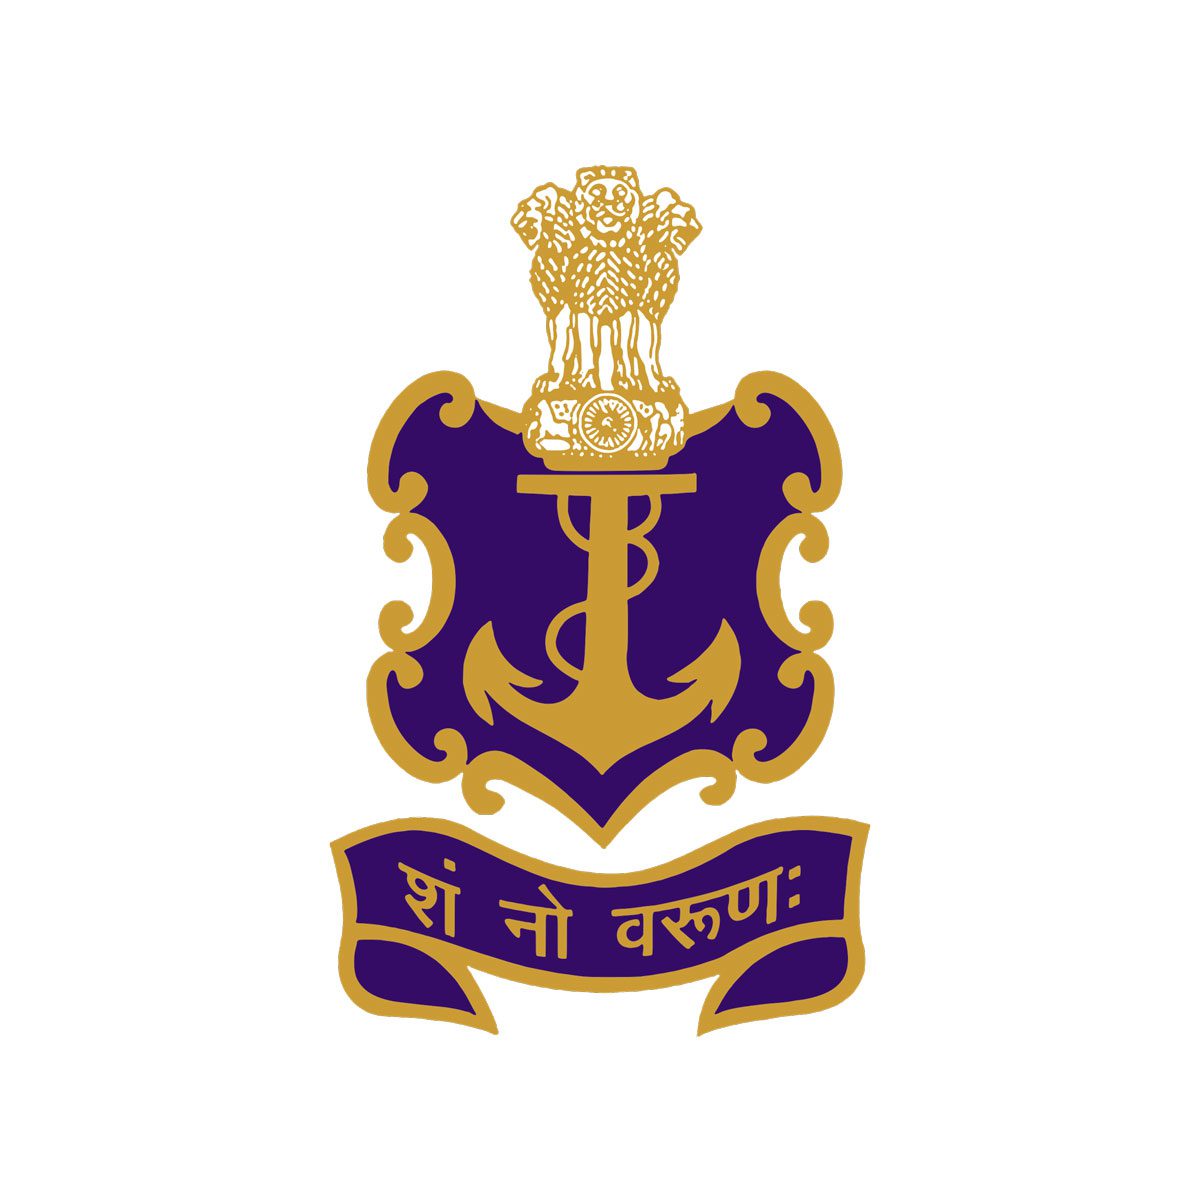 Indian Navy Agniveer Ssr Recruitment - Indian Armed Forces Job Vacancies